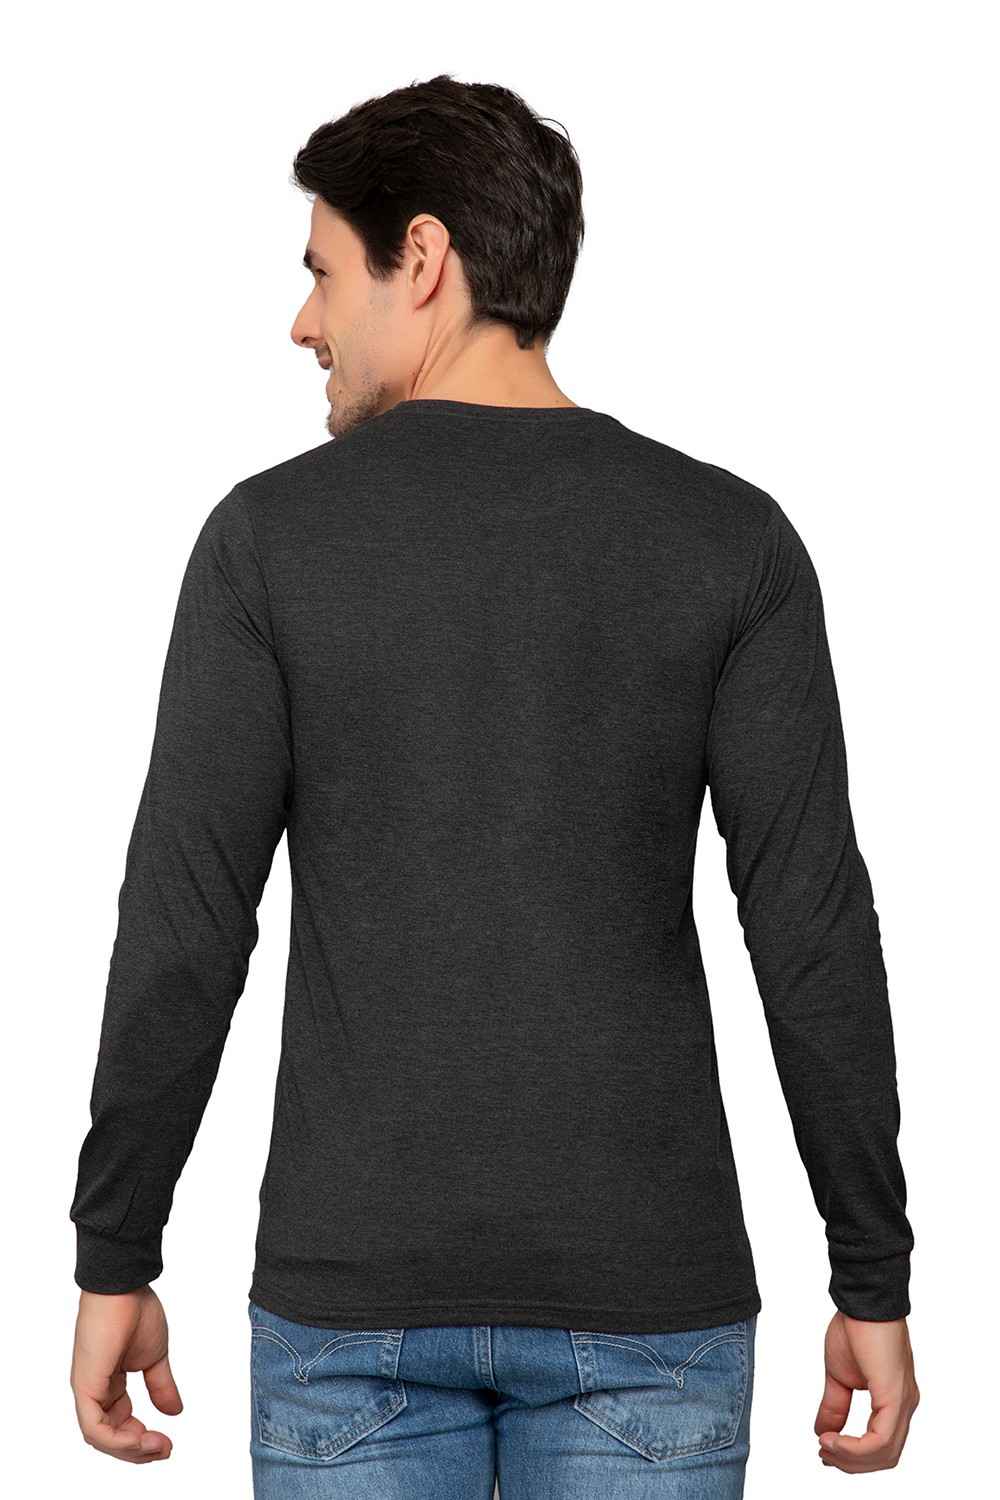 Black Plain T-shirt for Men and Women Full Sleeve | Jopokart